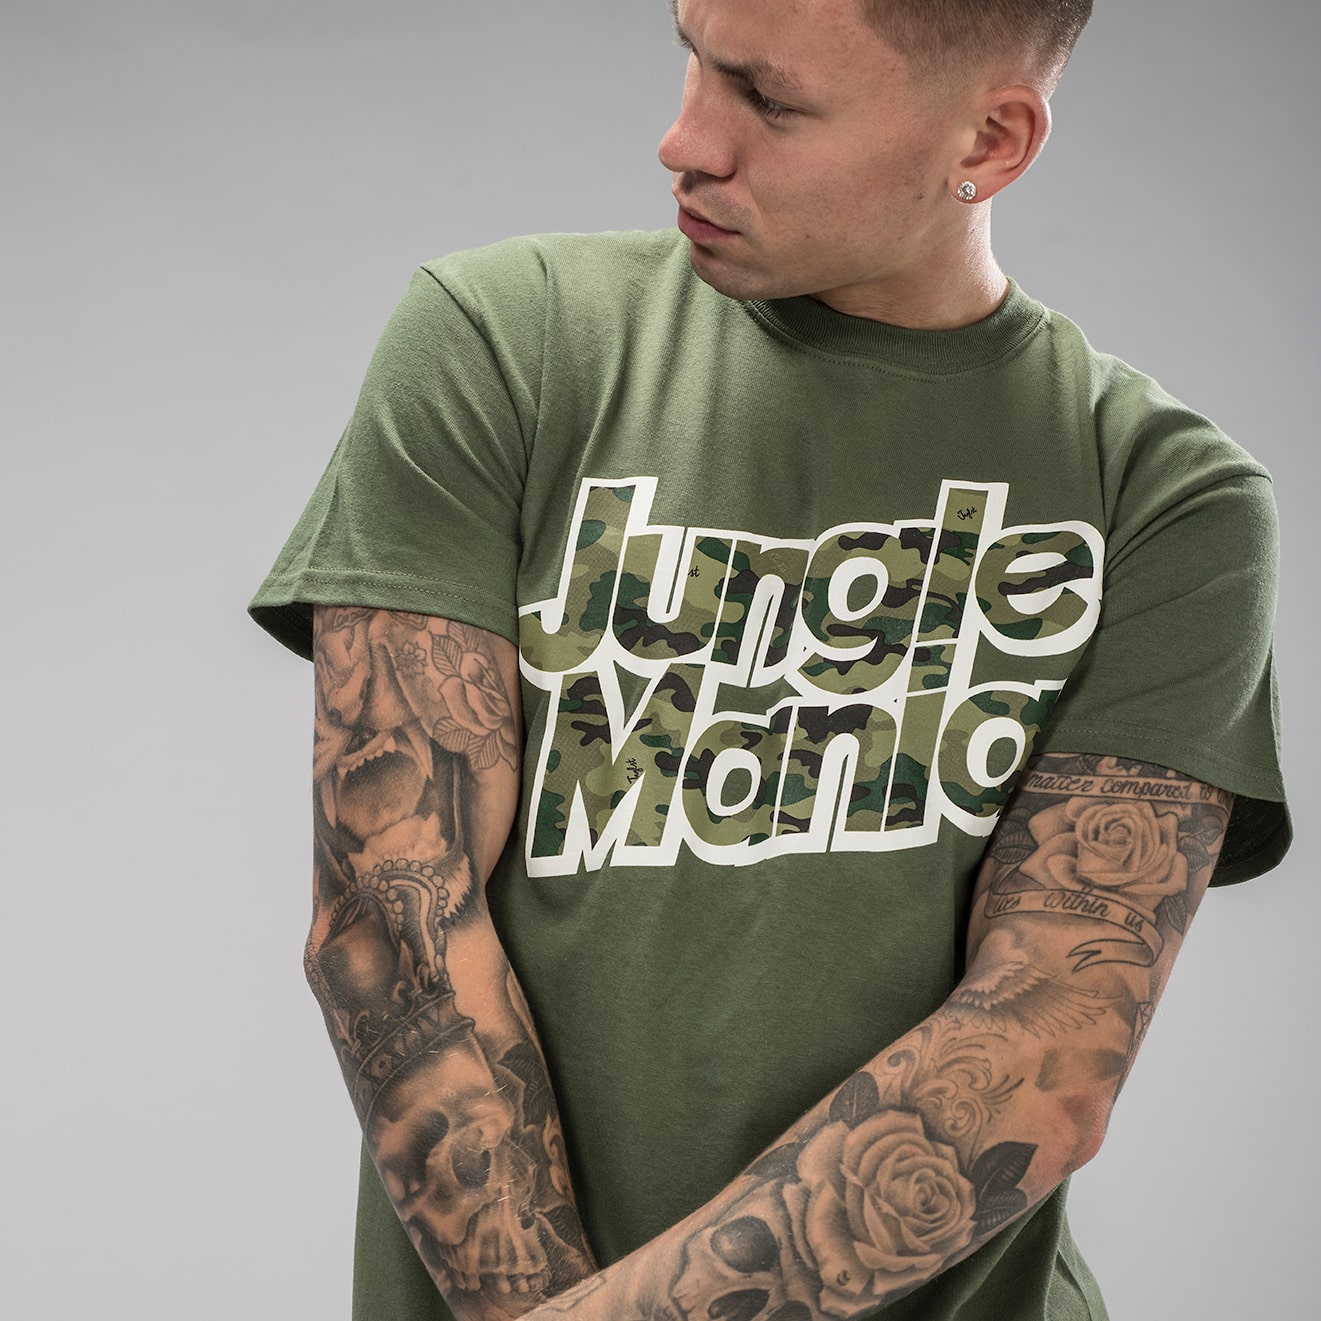 Green Jungle Mania T-Shirt with Camo design